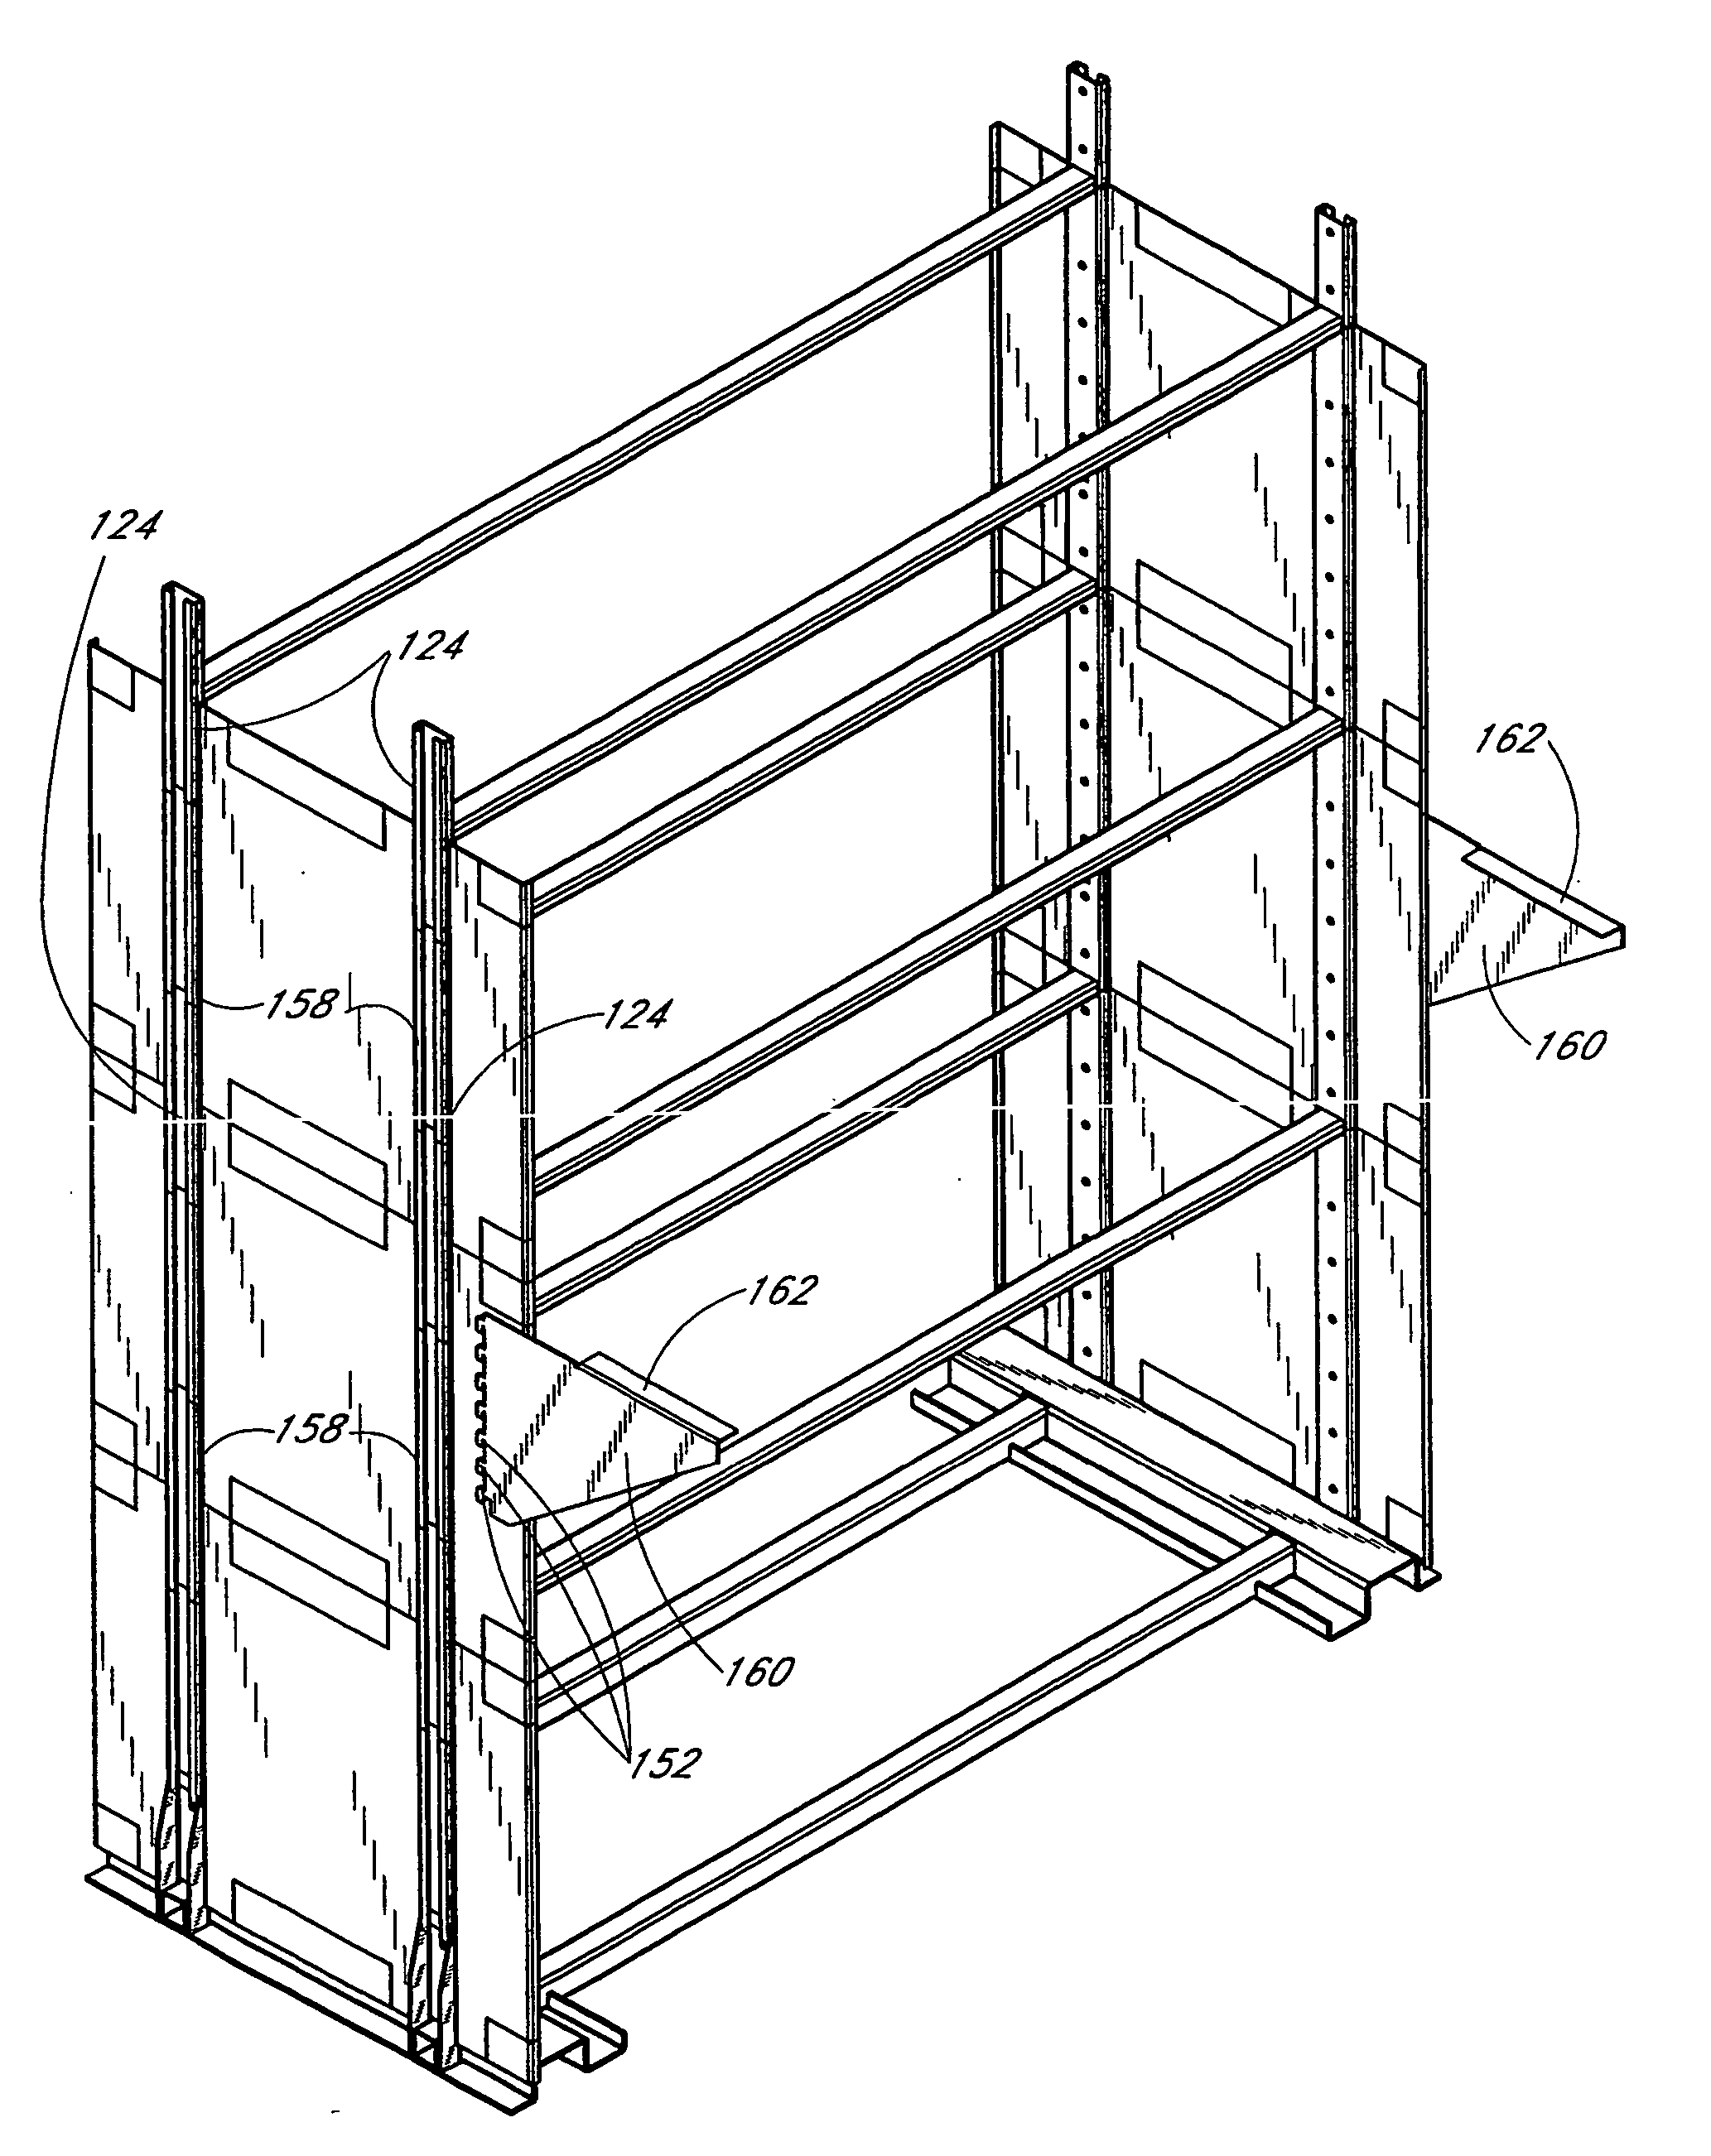 Modular furniture system